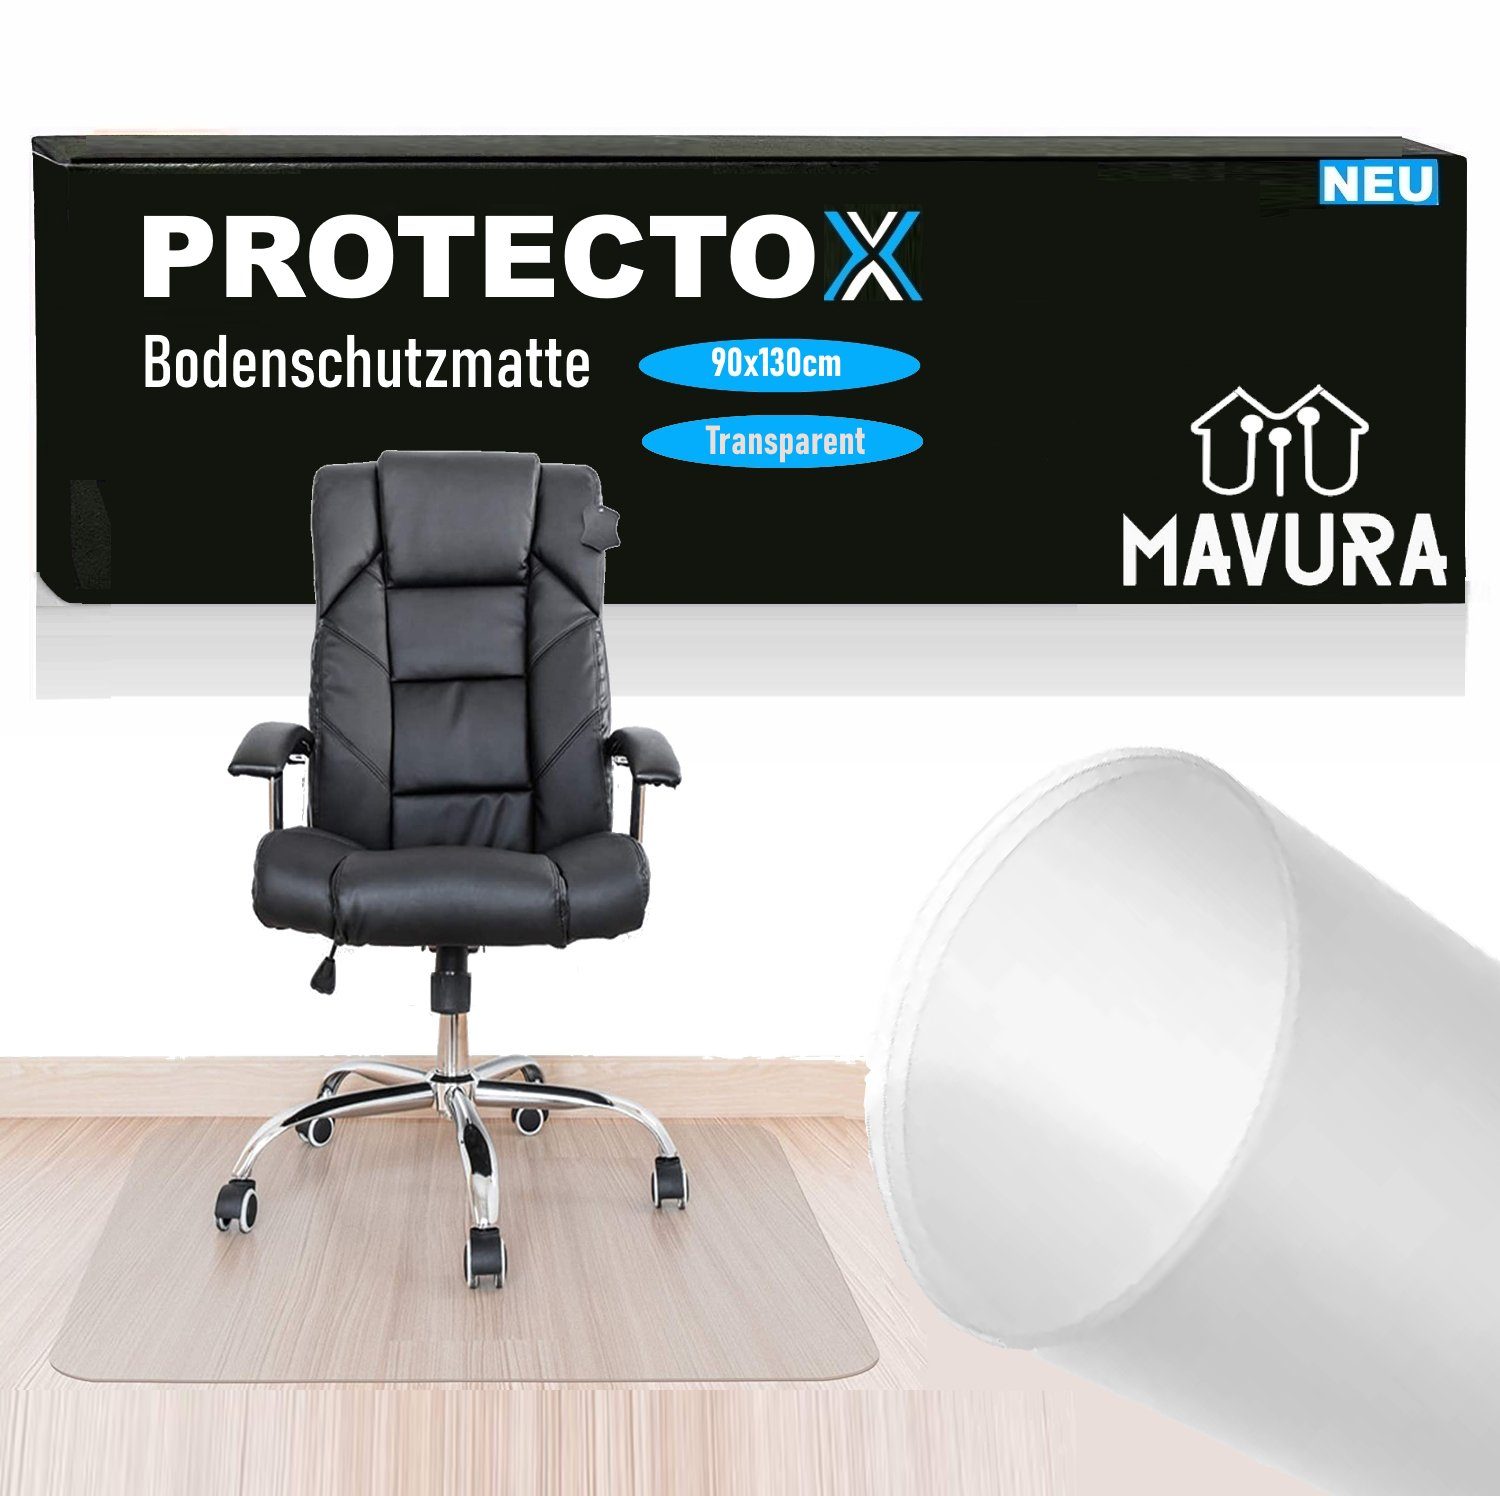 MAVURA Bodenschutzmatte PROTECTOX Bürostuhl Fußbodenschutz, & Stuhlmatte Antirutsch Kratzfest Transparent 90x130cm Unterlage